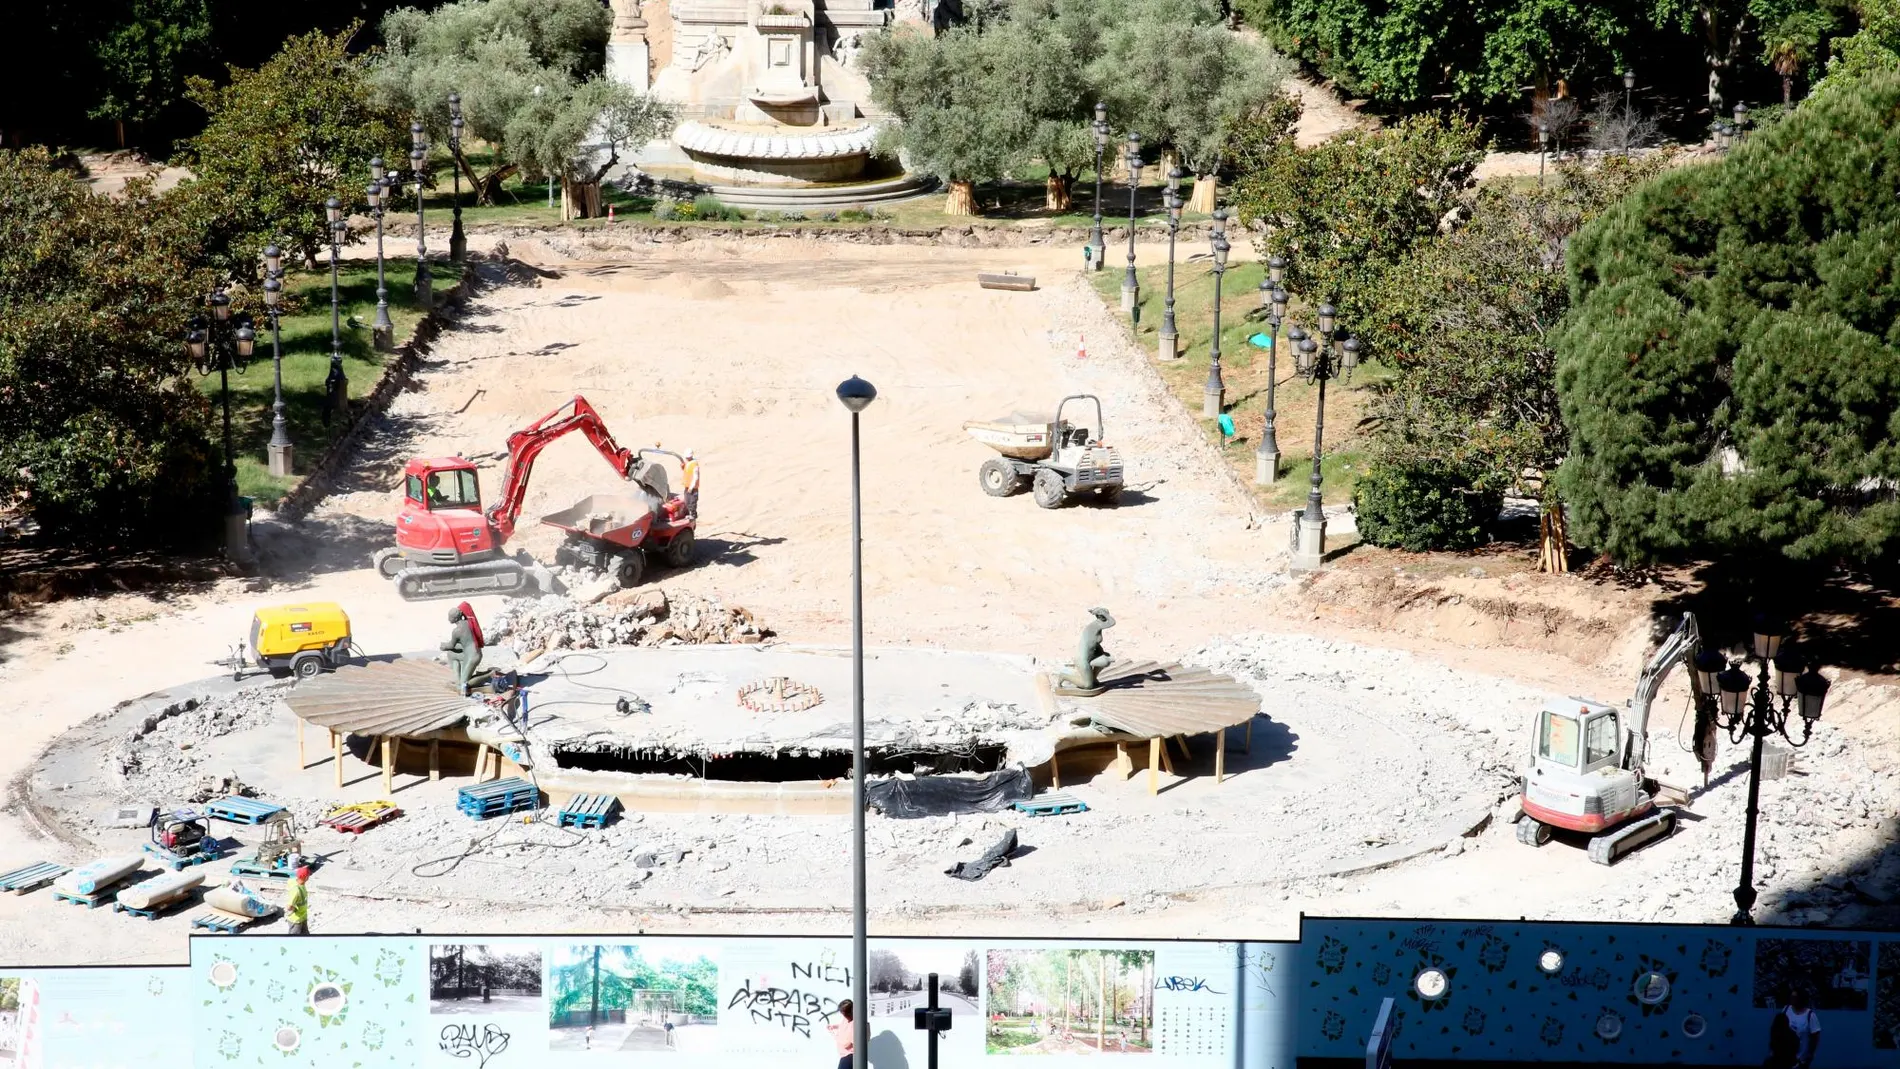 La reforma de Plaza de España estaba planteada para finalizar a finales del año 2020. El proyecto cuenta con un presupuesto de cerca de 70 millones de euros